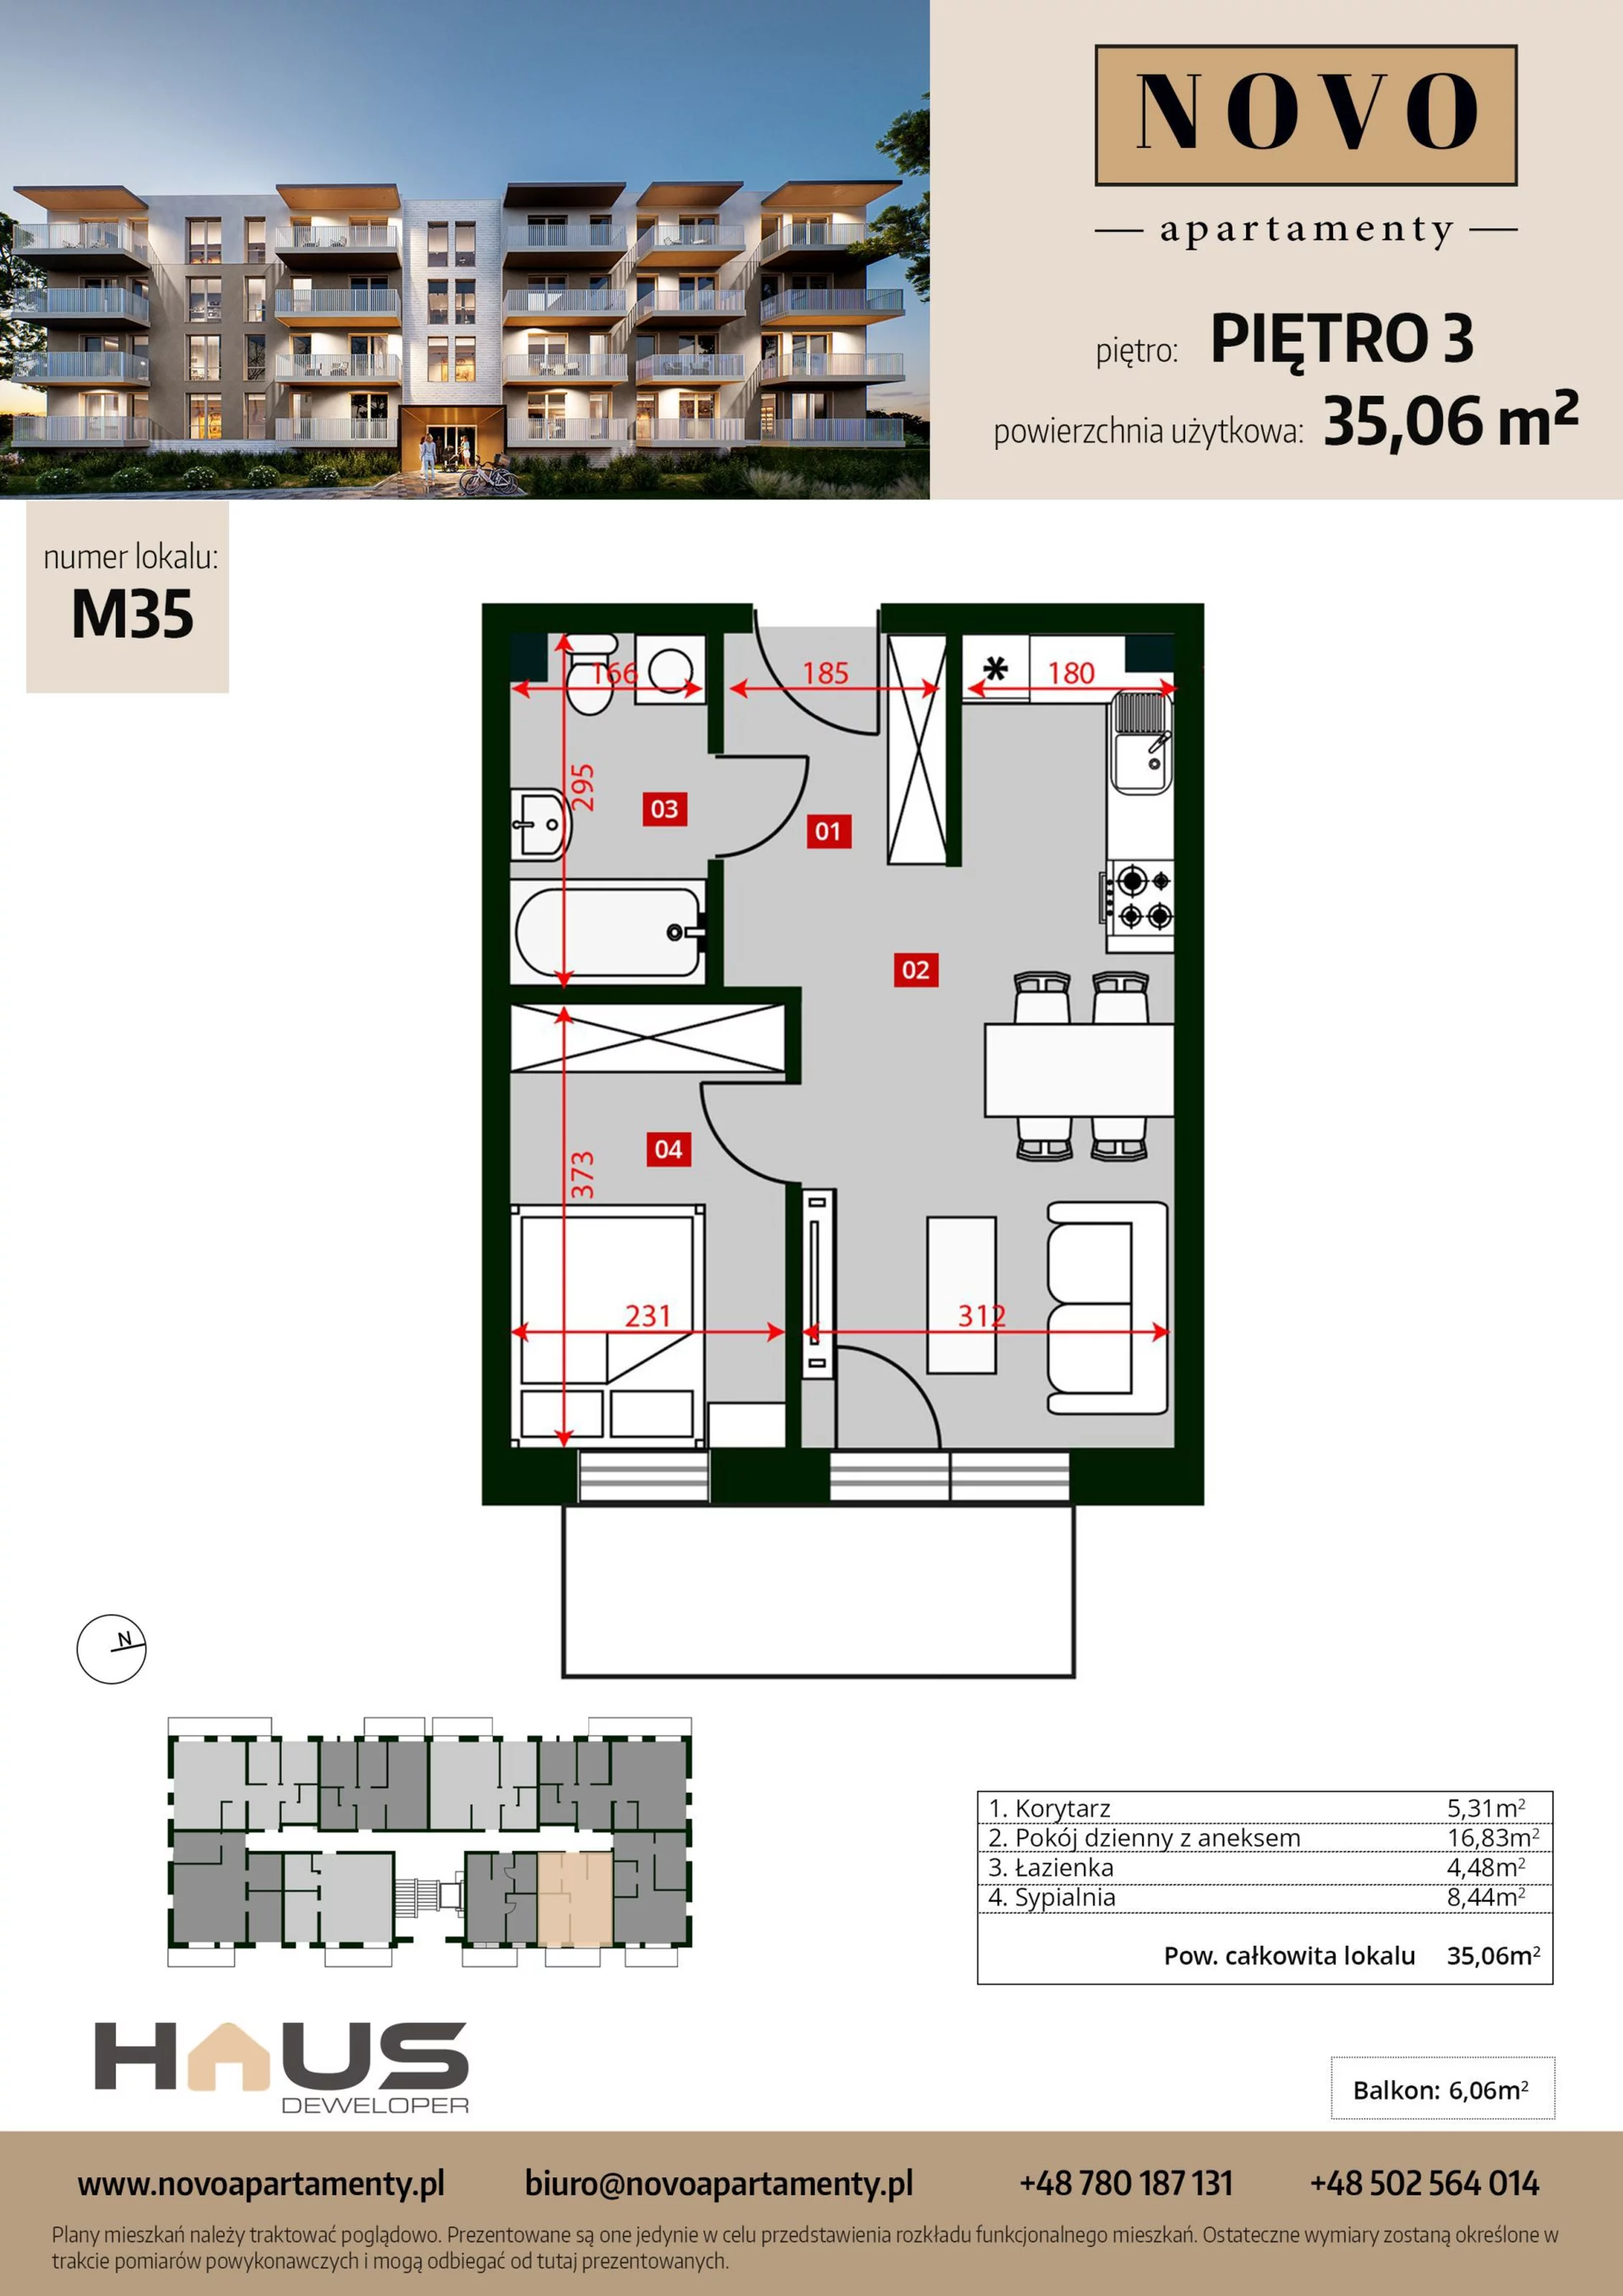 Mieszkanie 35,06 m², piętro 3, oferta nr M35, Apartamenty NOVO, Nysa, ul. Franciszkańska